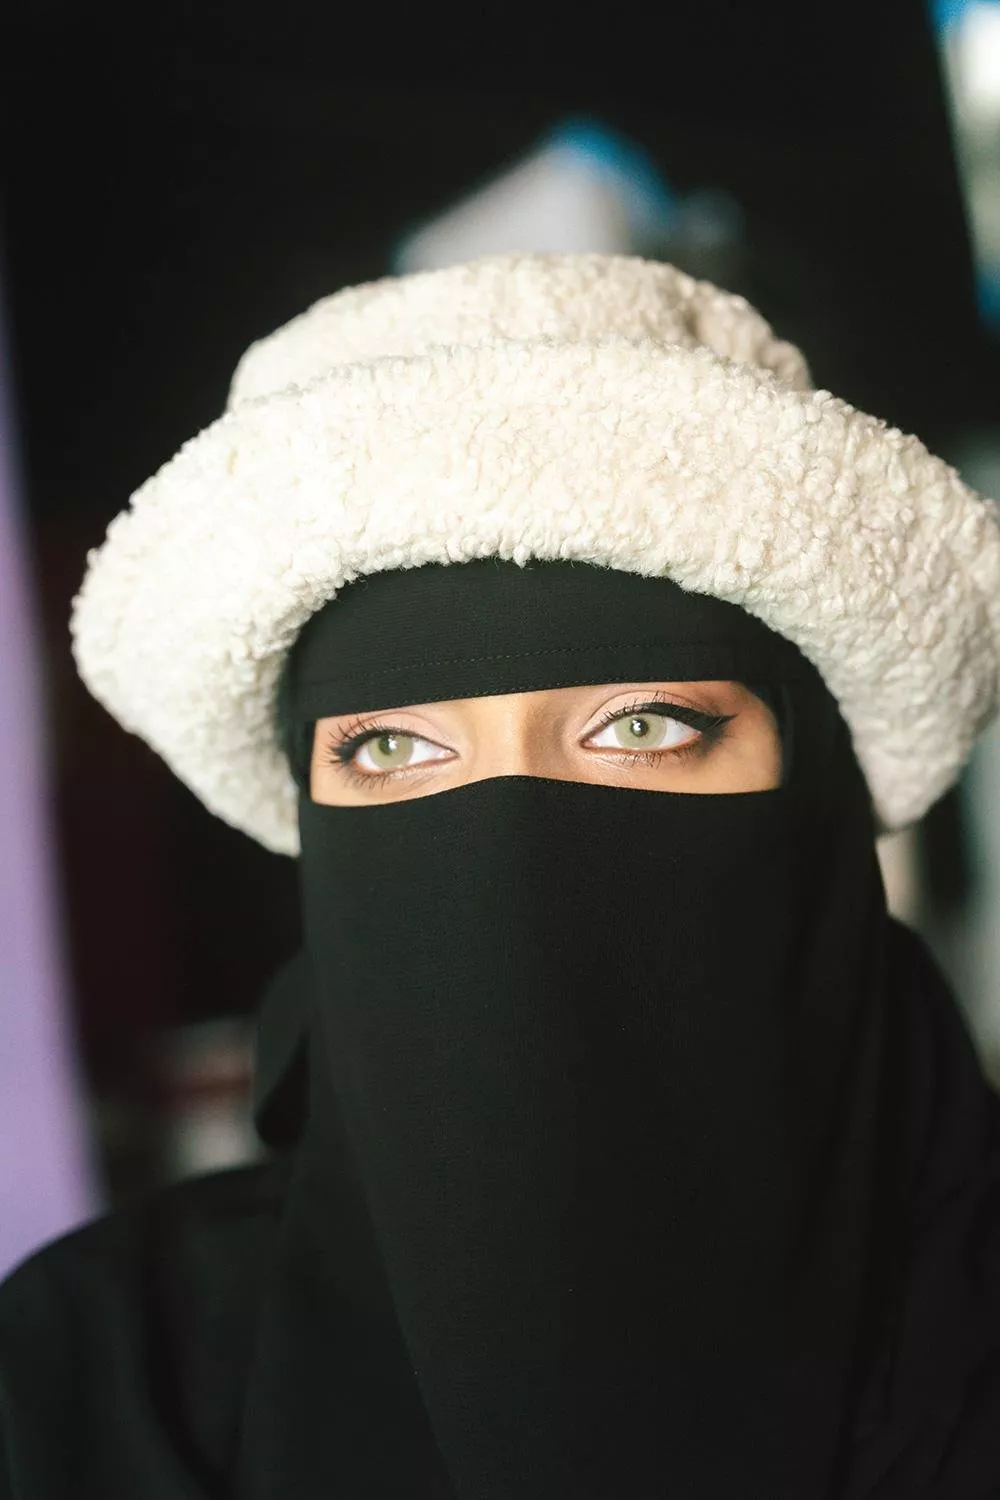 مقابلات خاصة مع 4 نساء عربيات كسرن القيود وحدّدن معايير الجمال الخاصة بهنّ